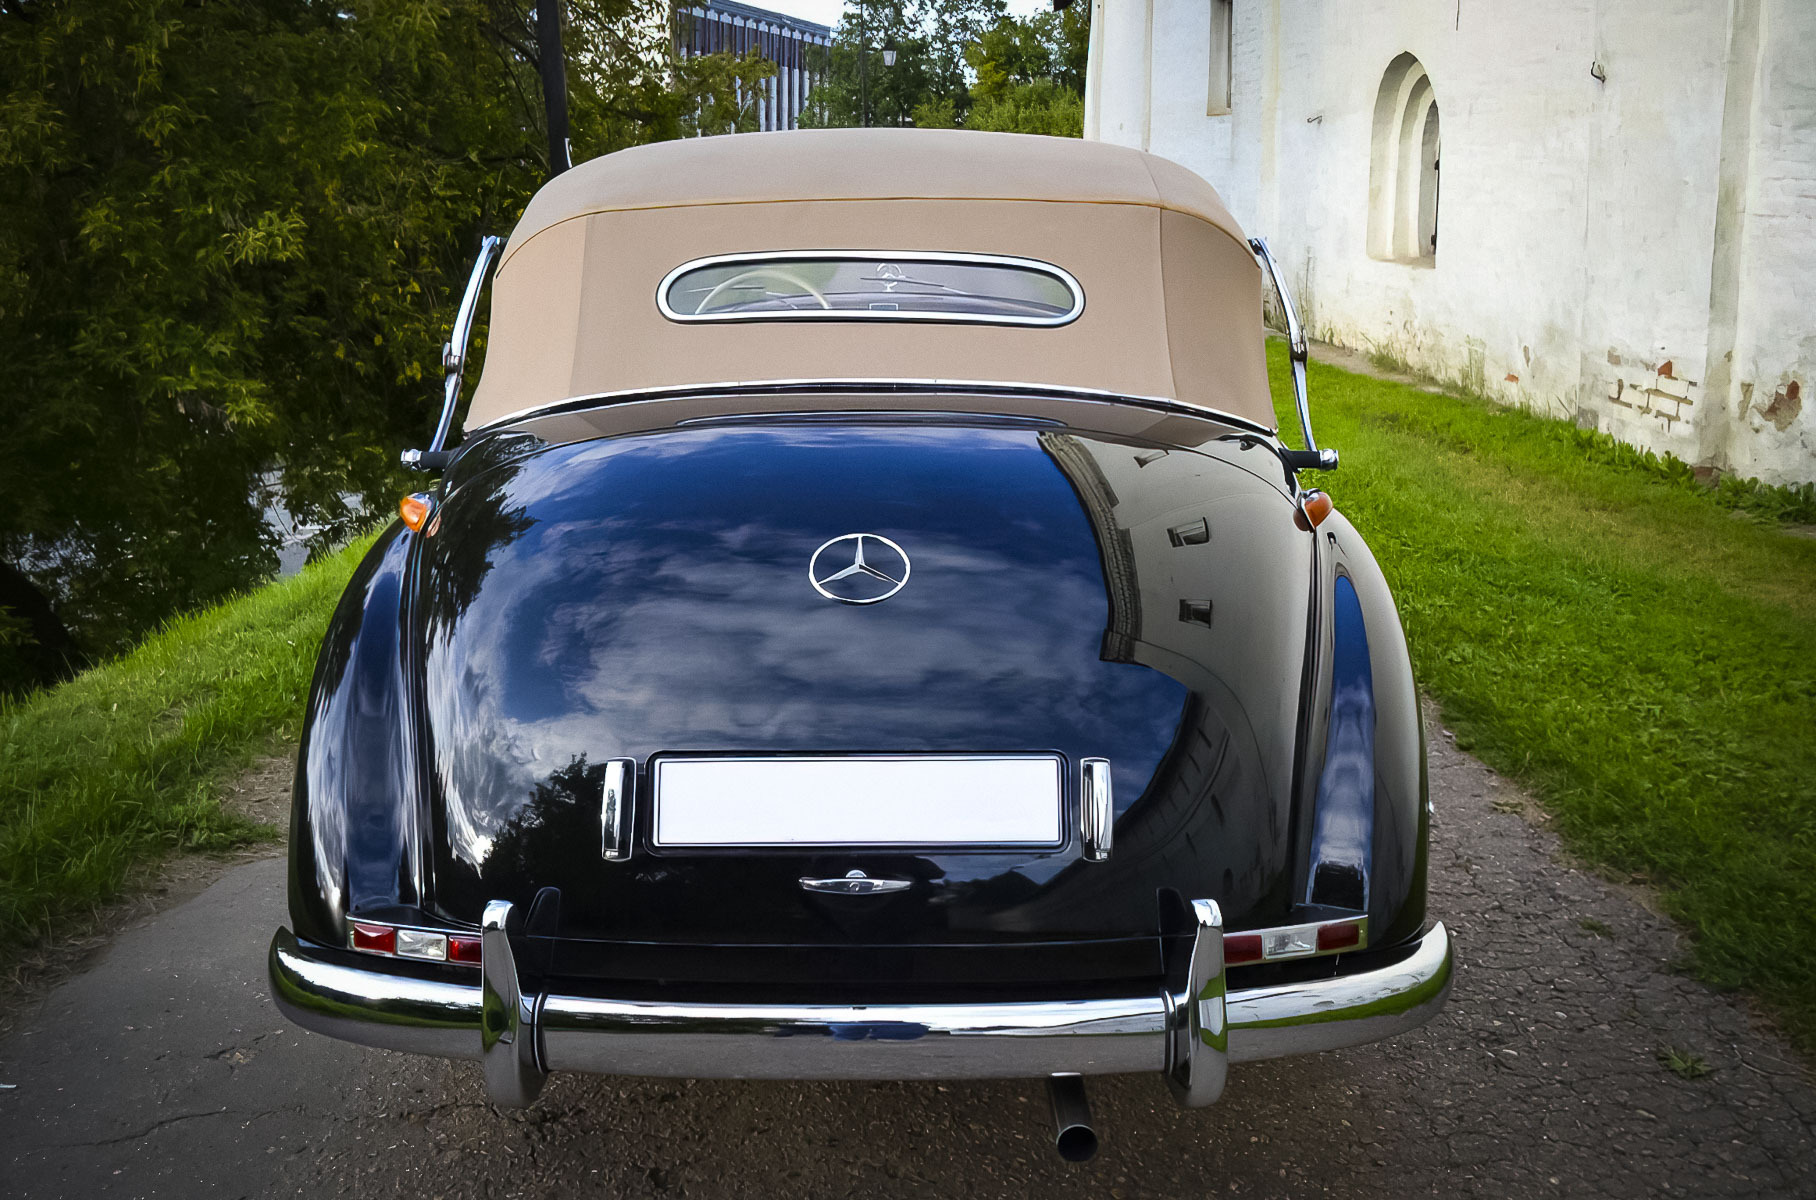 Редчайший 67-летний кабриолет Mercedes-Benz в идеальном состоянии продают в Москве за 21,7 миллиона рублей